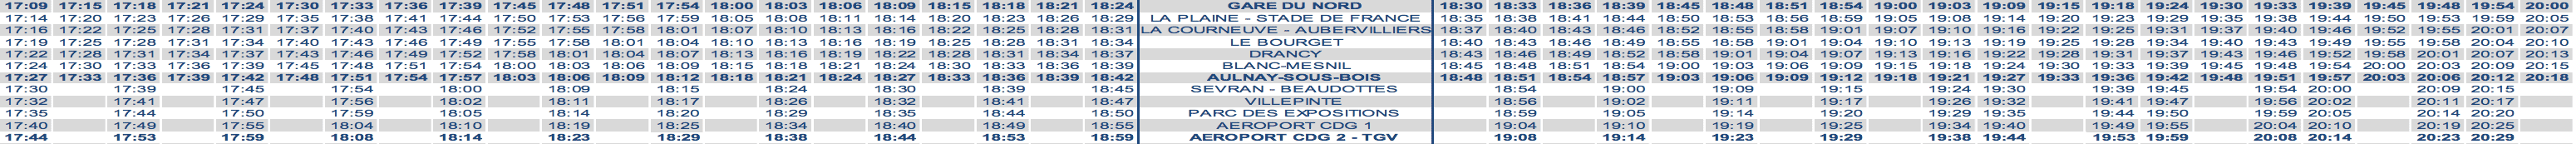 RER B Train Timetable Paris to CDG Evening Weekday 2020 strike